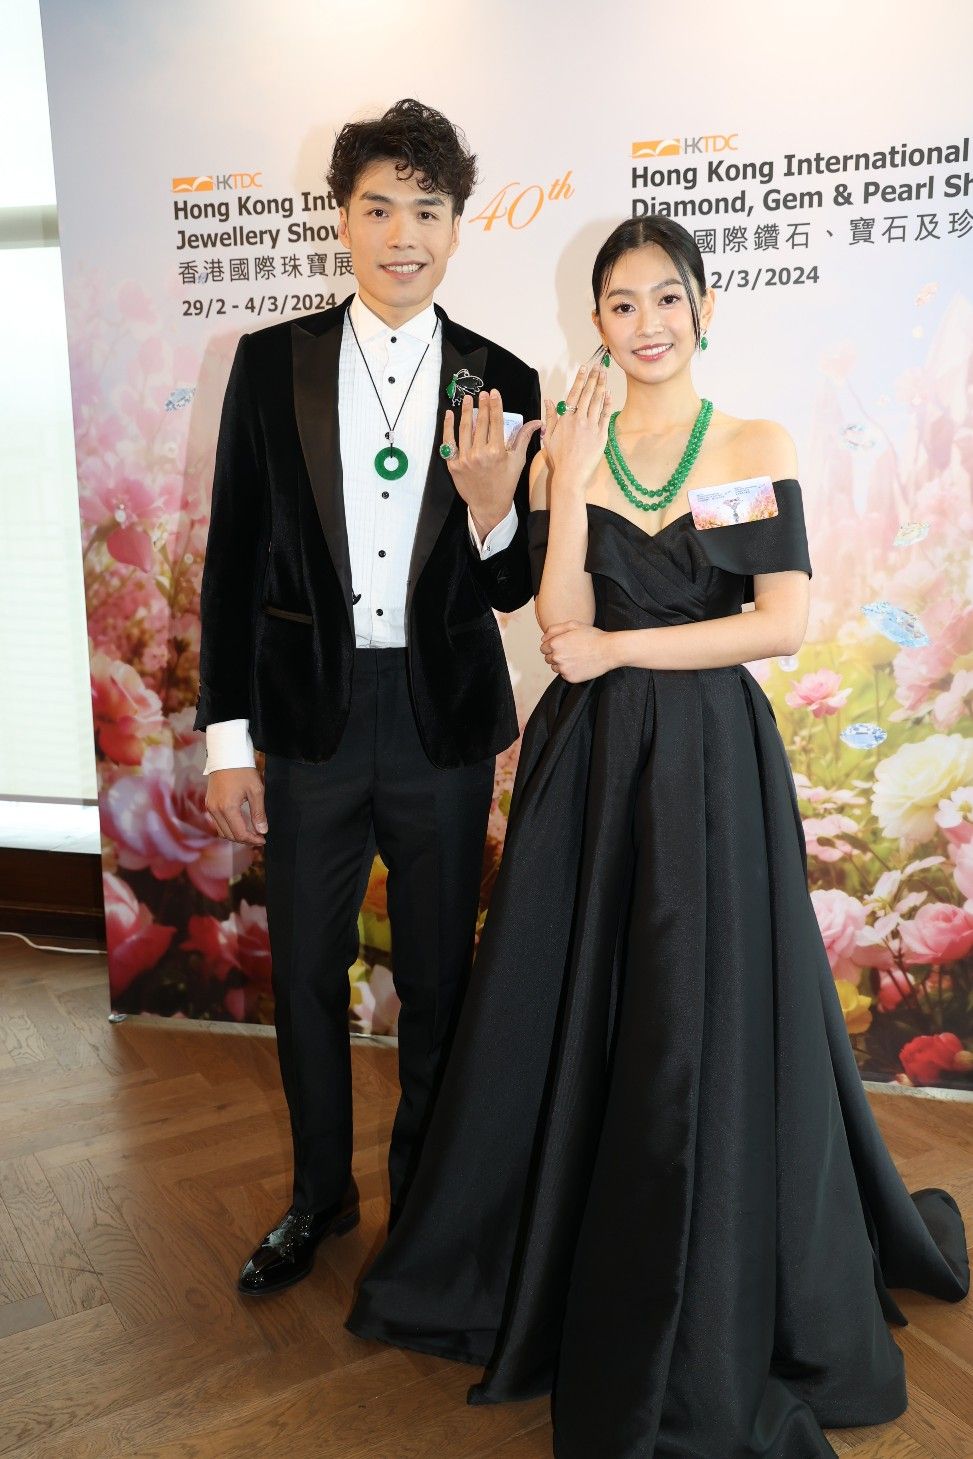 郭柏妍与香港剑击运动员张小伦出席珠宝展记者会。